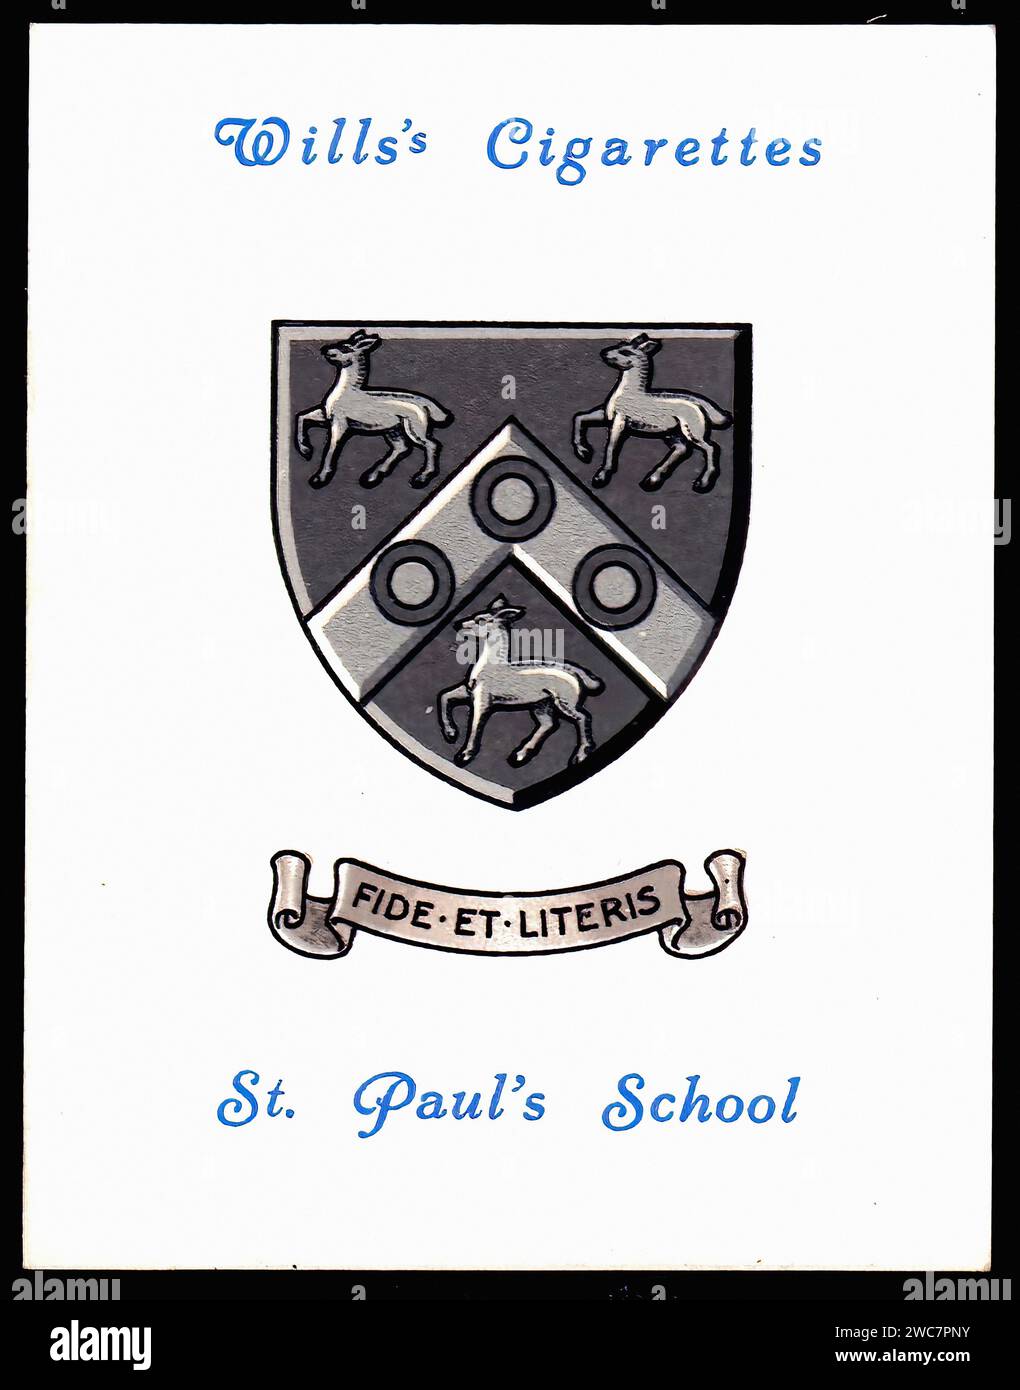 Arms of St Paul's School - illustrazione di carte di sigaretta d'epoca Foto Stock